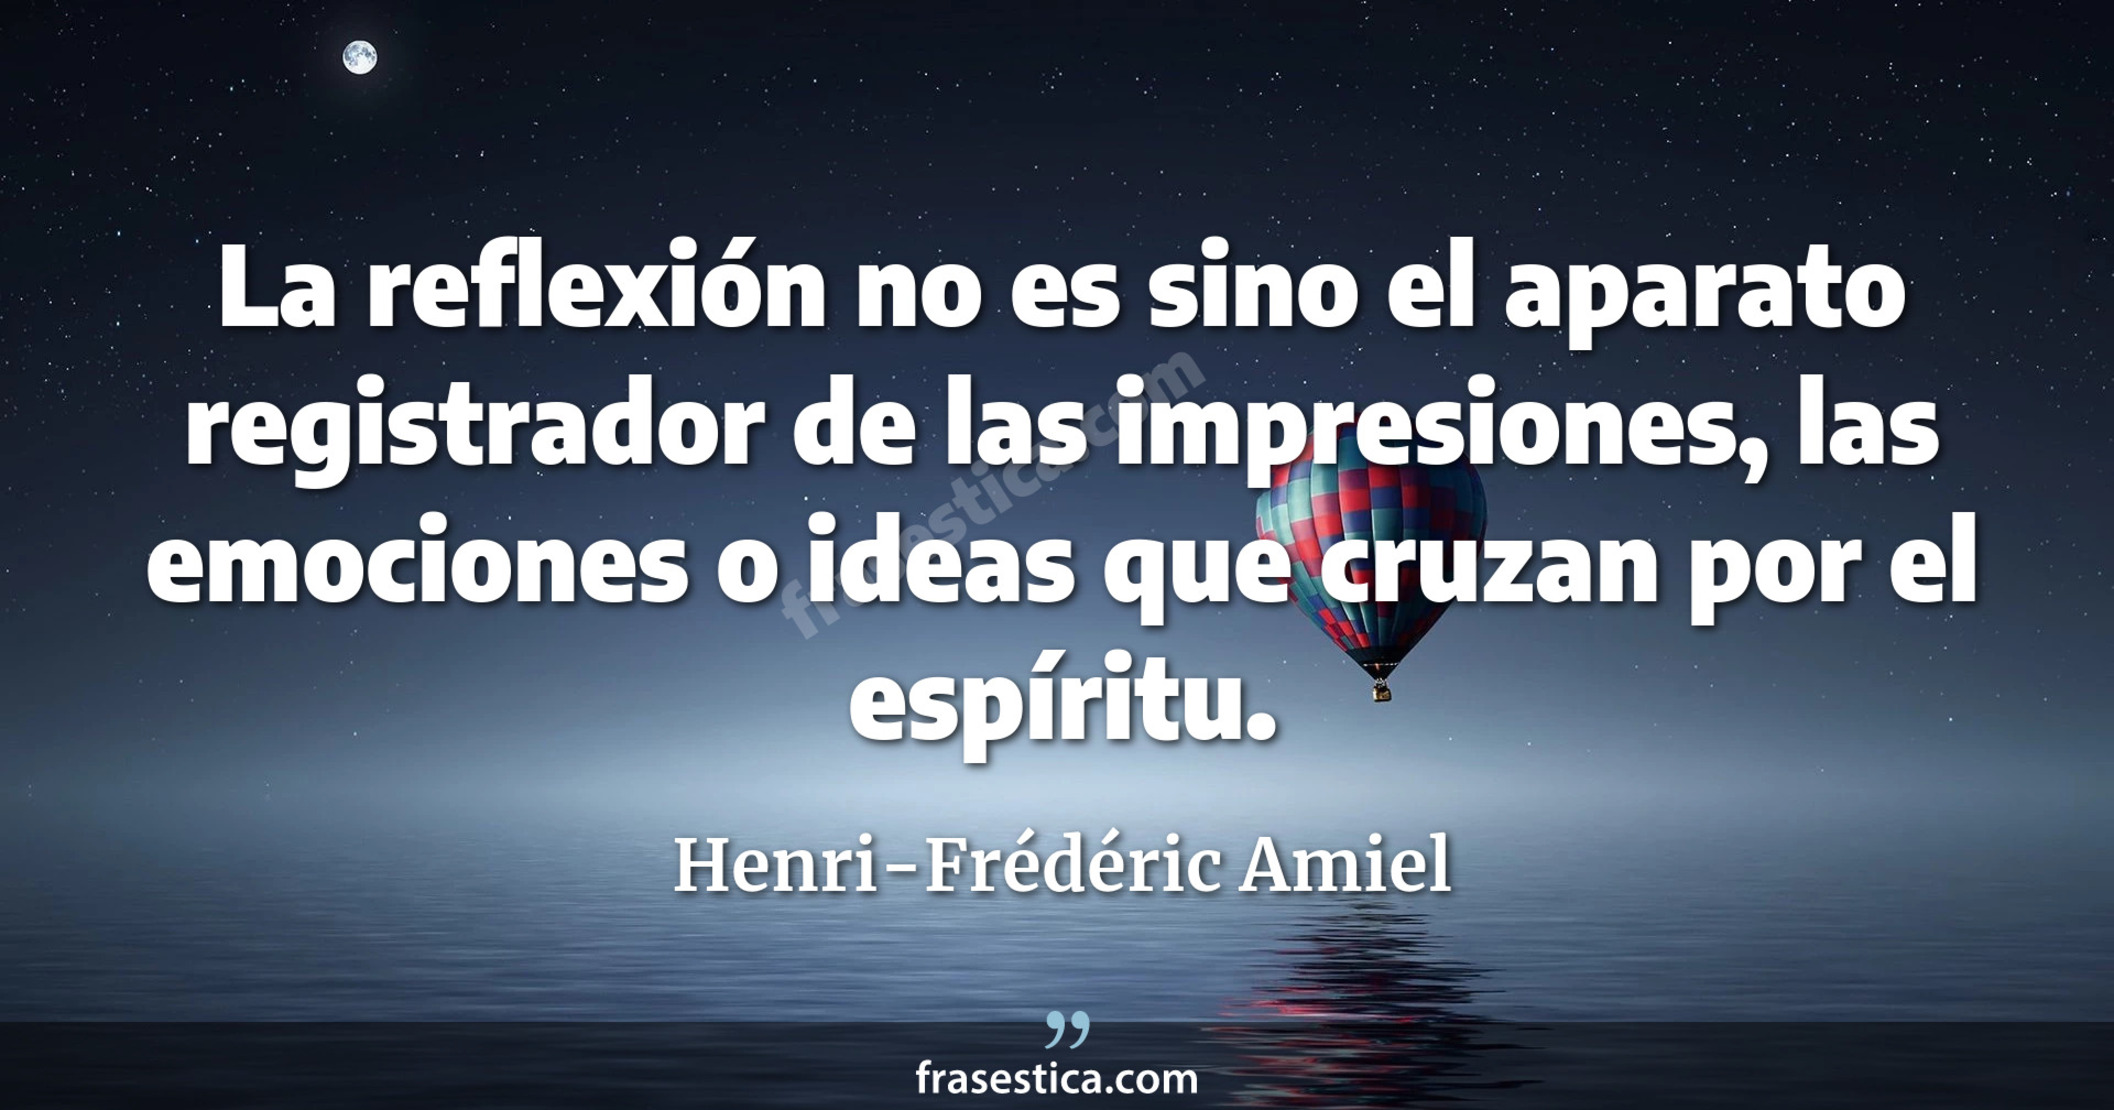 La reflexión no es sino el aparato registrador de las impresiones, las emociones o ideas que cruzan por el espíritu. - Henri-Frédéric Amiel